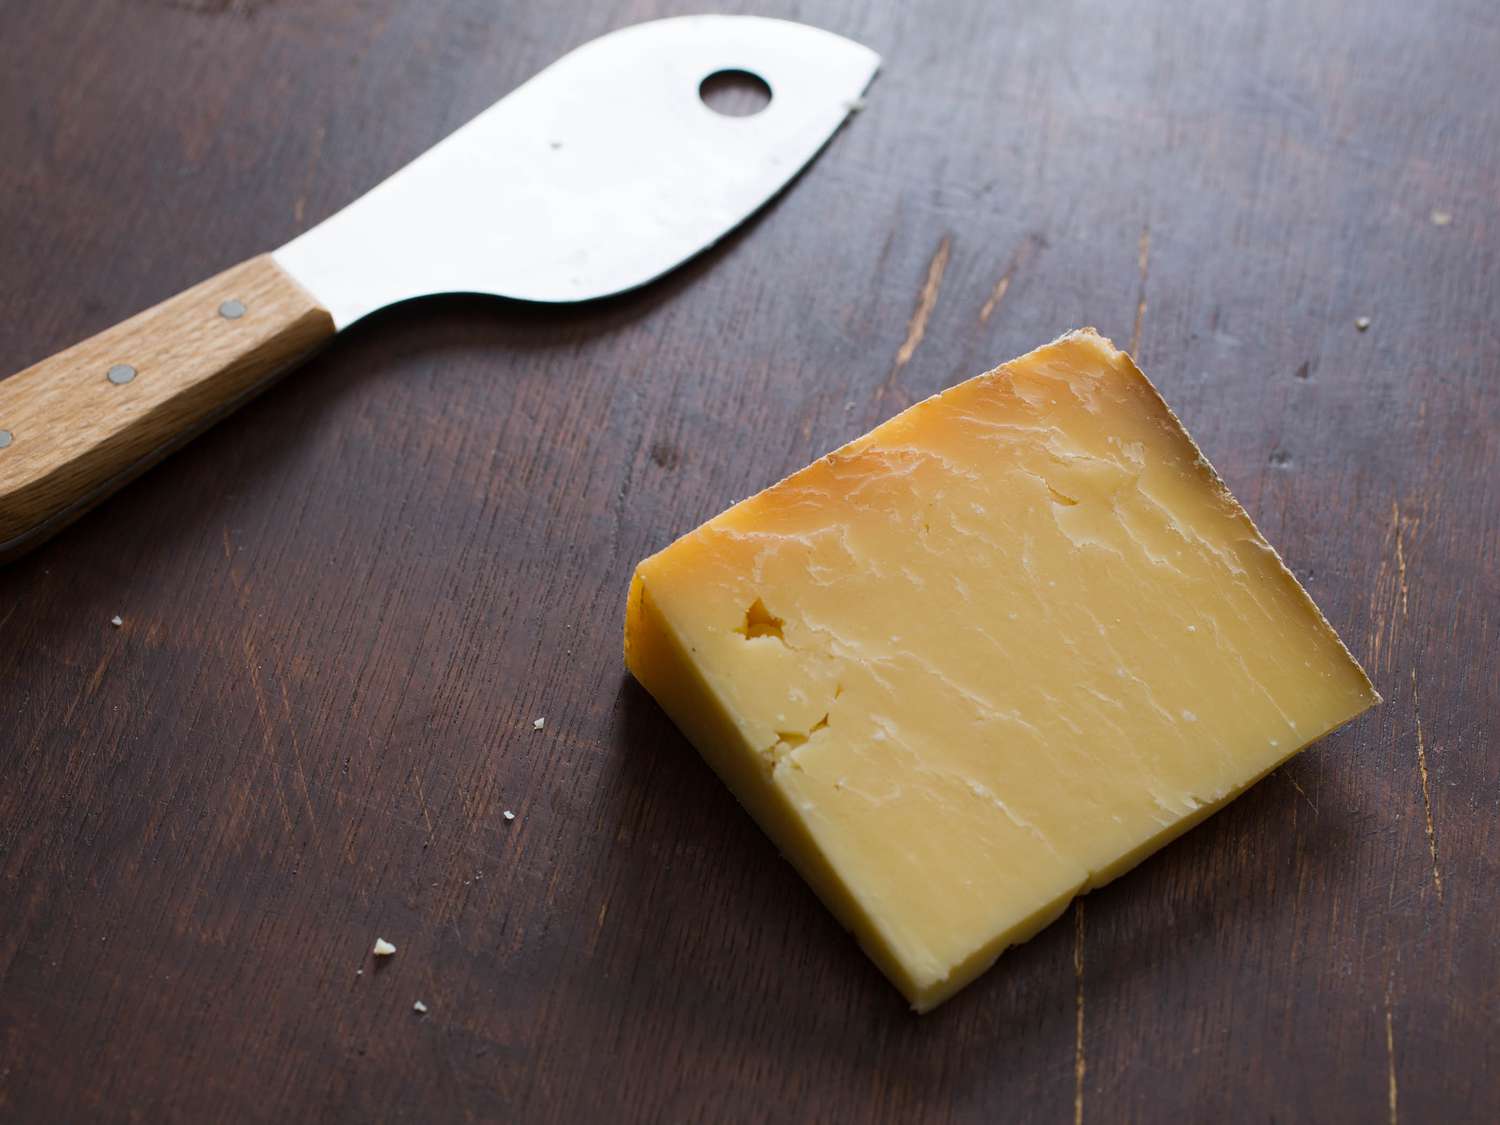 一块硬奶酪，旁边放一把奶酪刀。两人都在一张深色的木桌上。